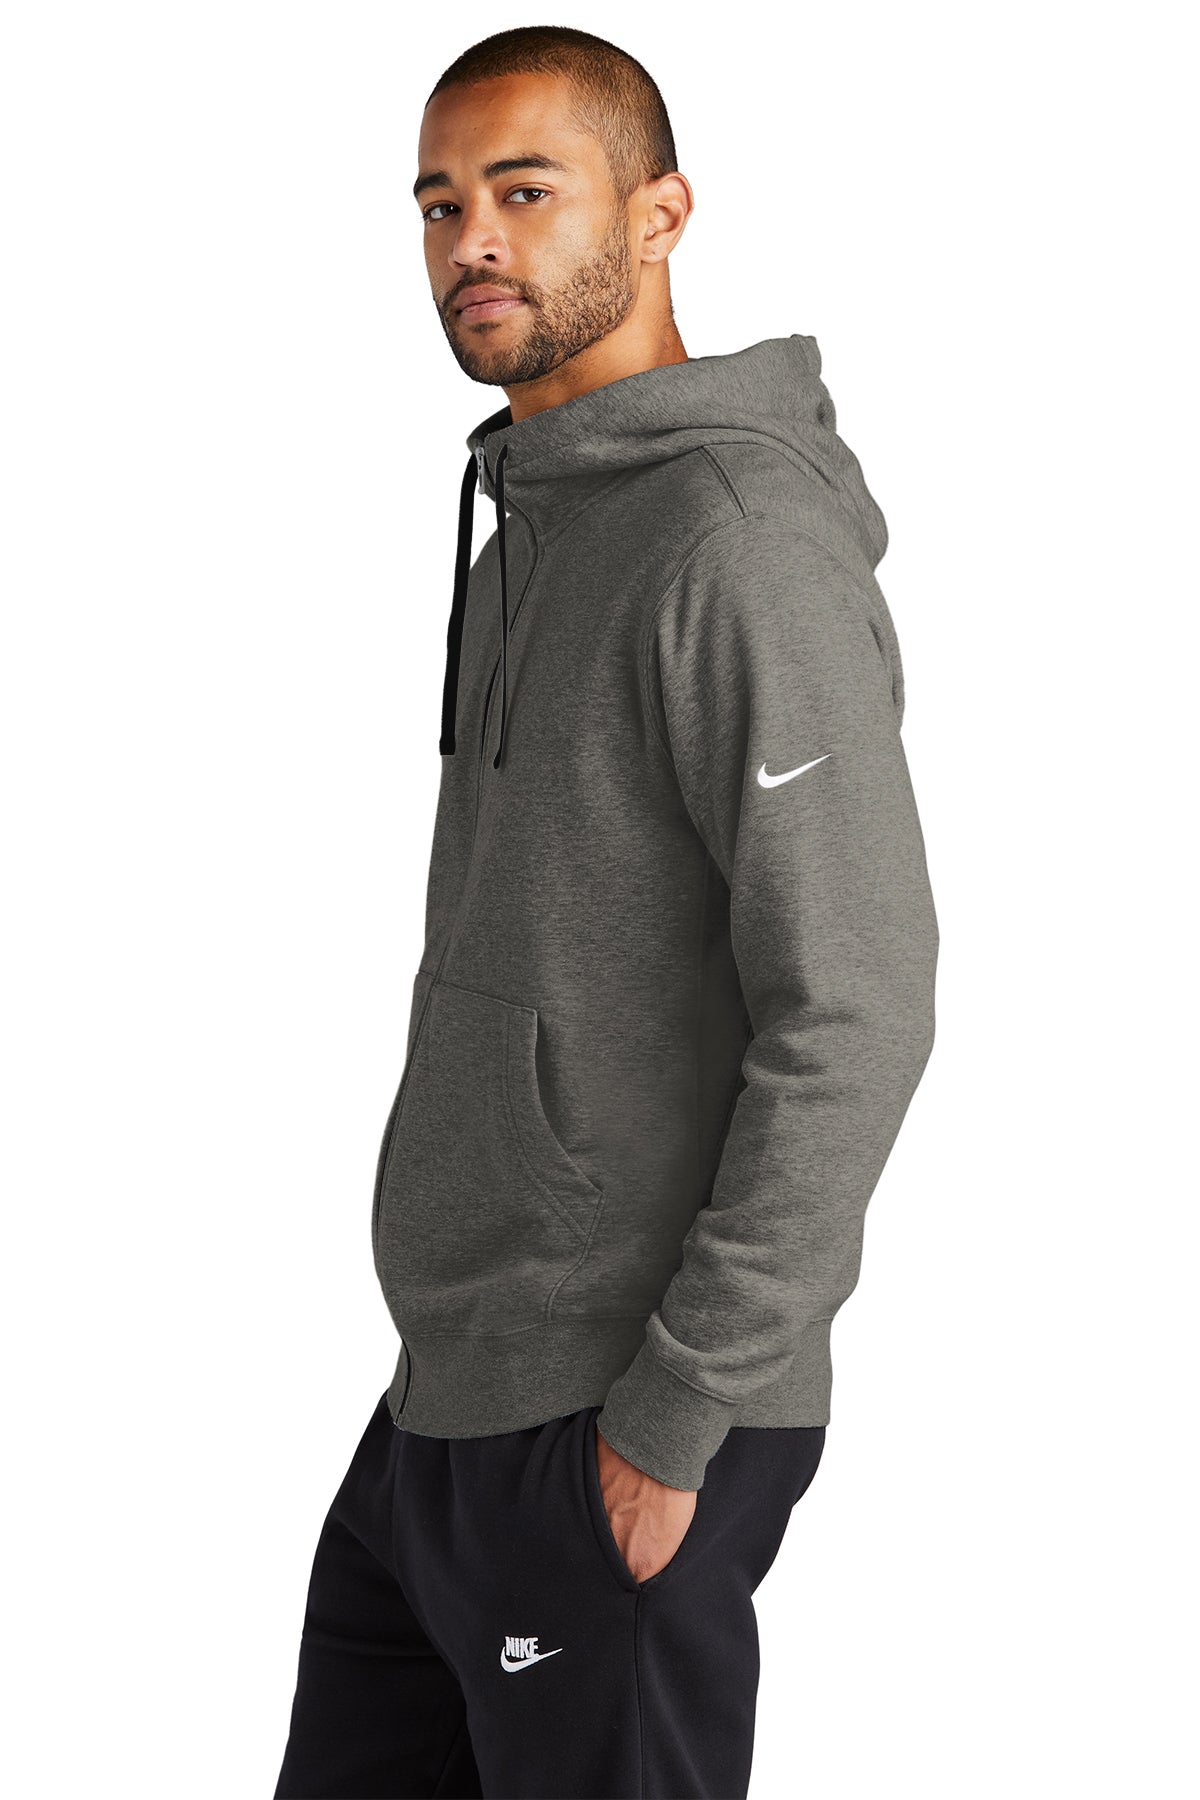 Branded Club Charcoal Fleece Swoosh Nike Full-Zip Sleeve Hoodie